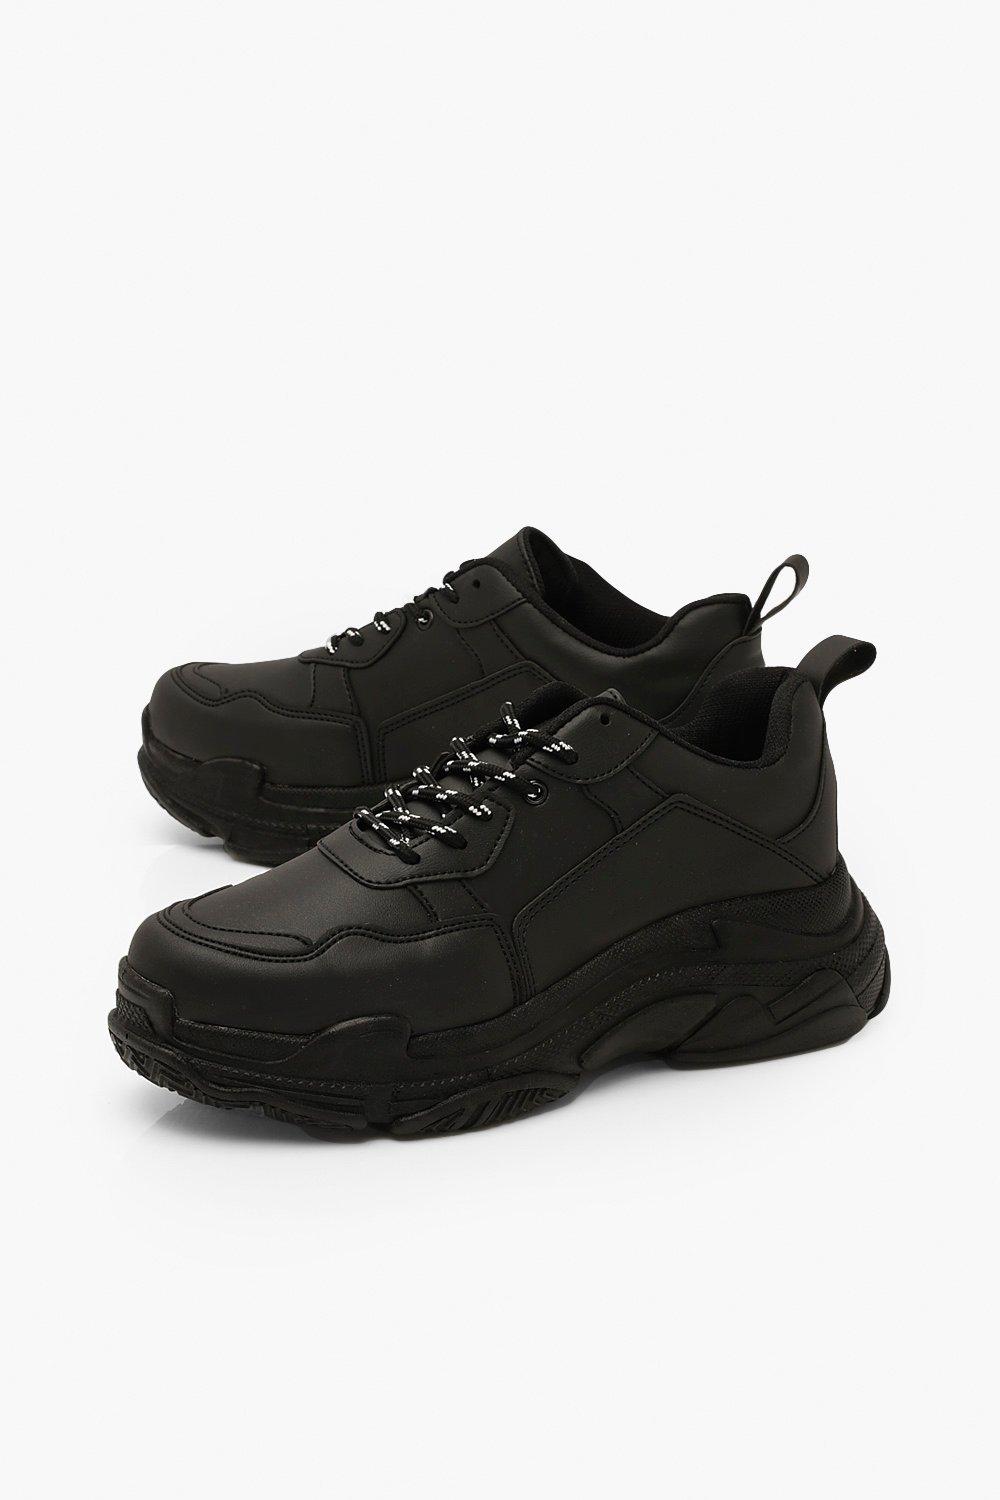 platform sneakers all black